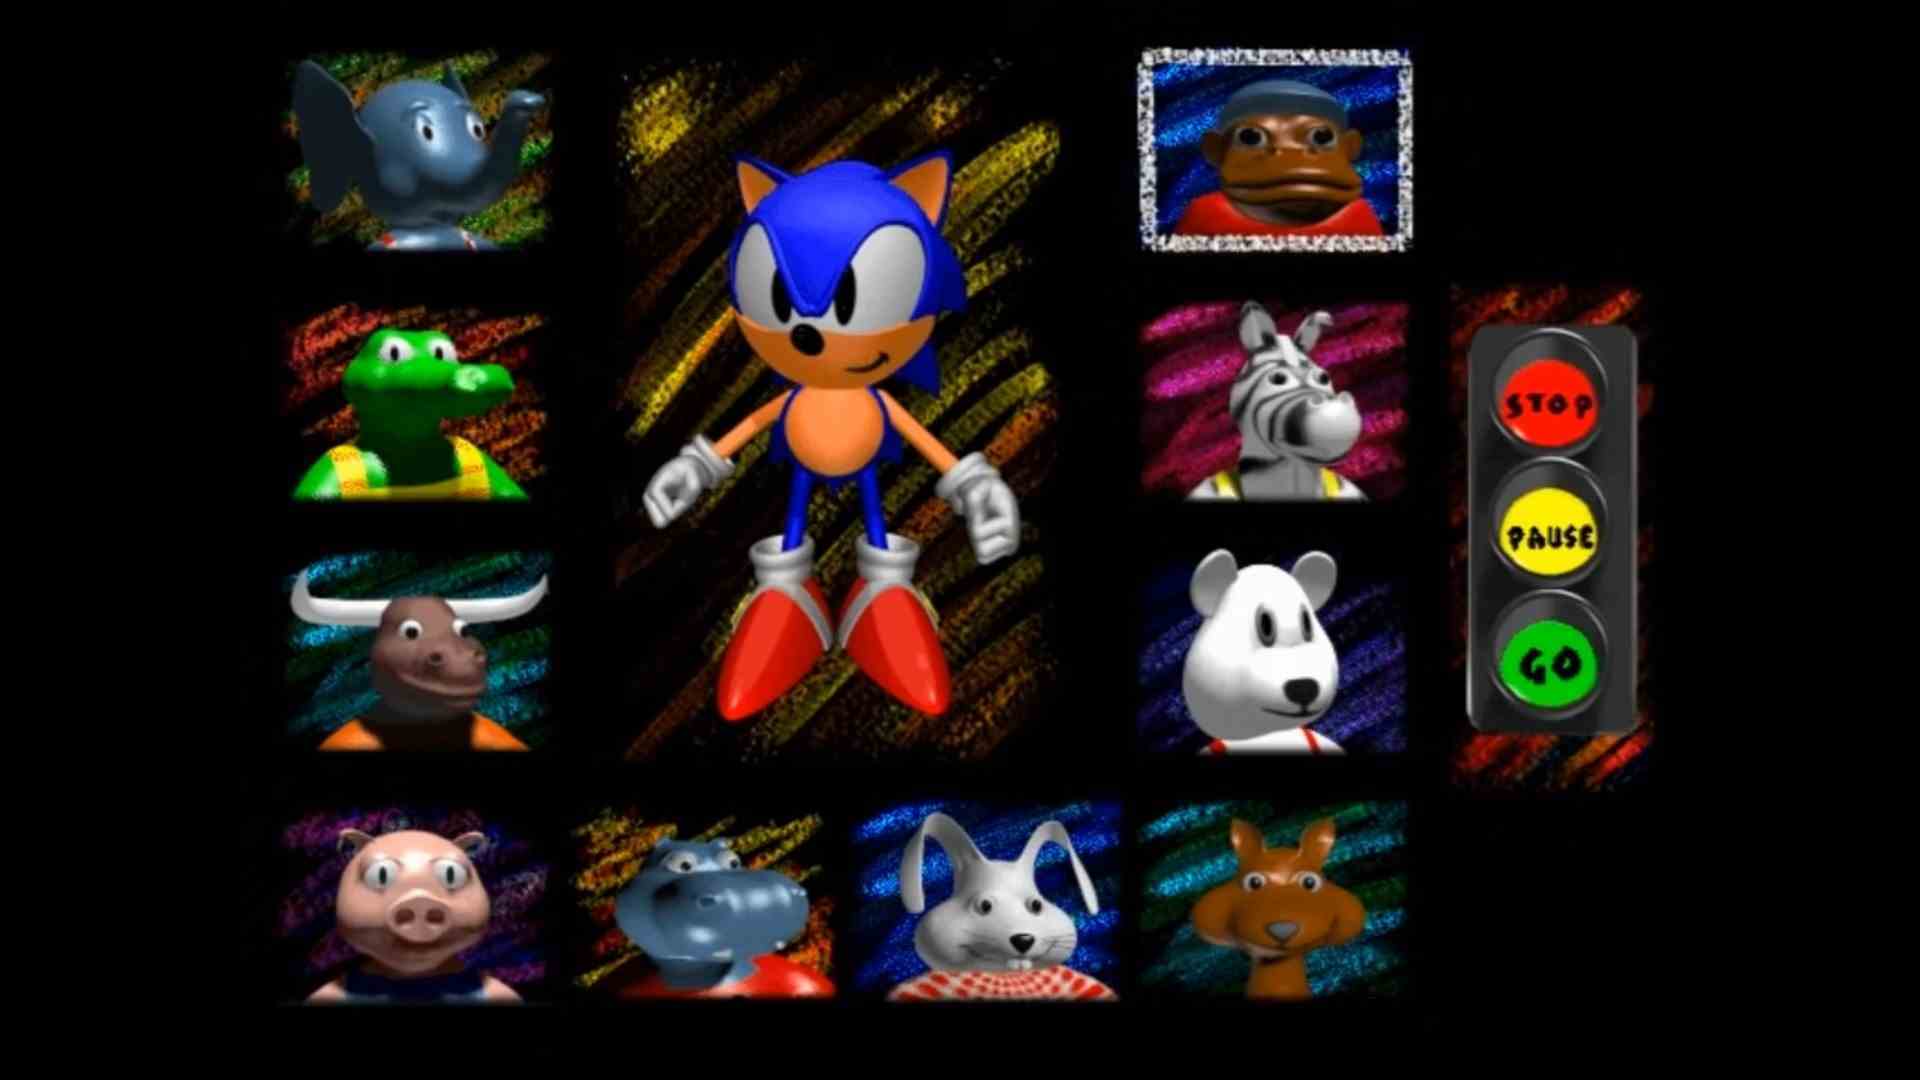 En iyi eğitici oyunlar: Sonic's Schoolhouse.  Görüntü, bir karakter seçme ekranında Sonic'i ve bir dizi garip karakteri göstermektedir.